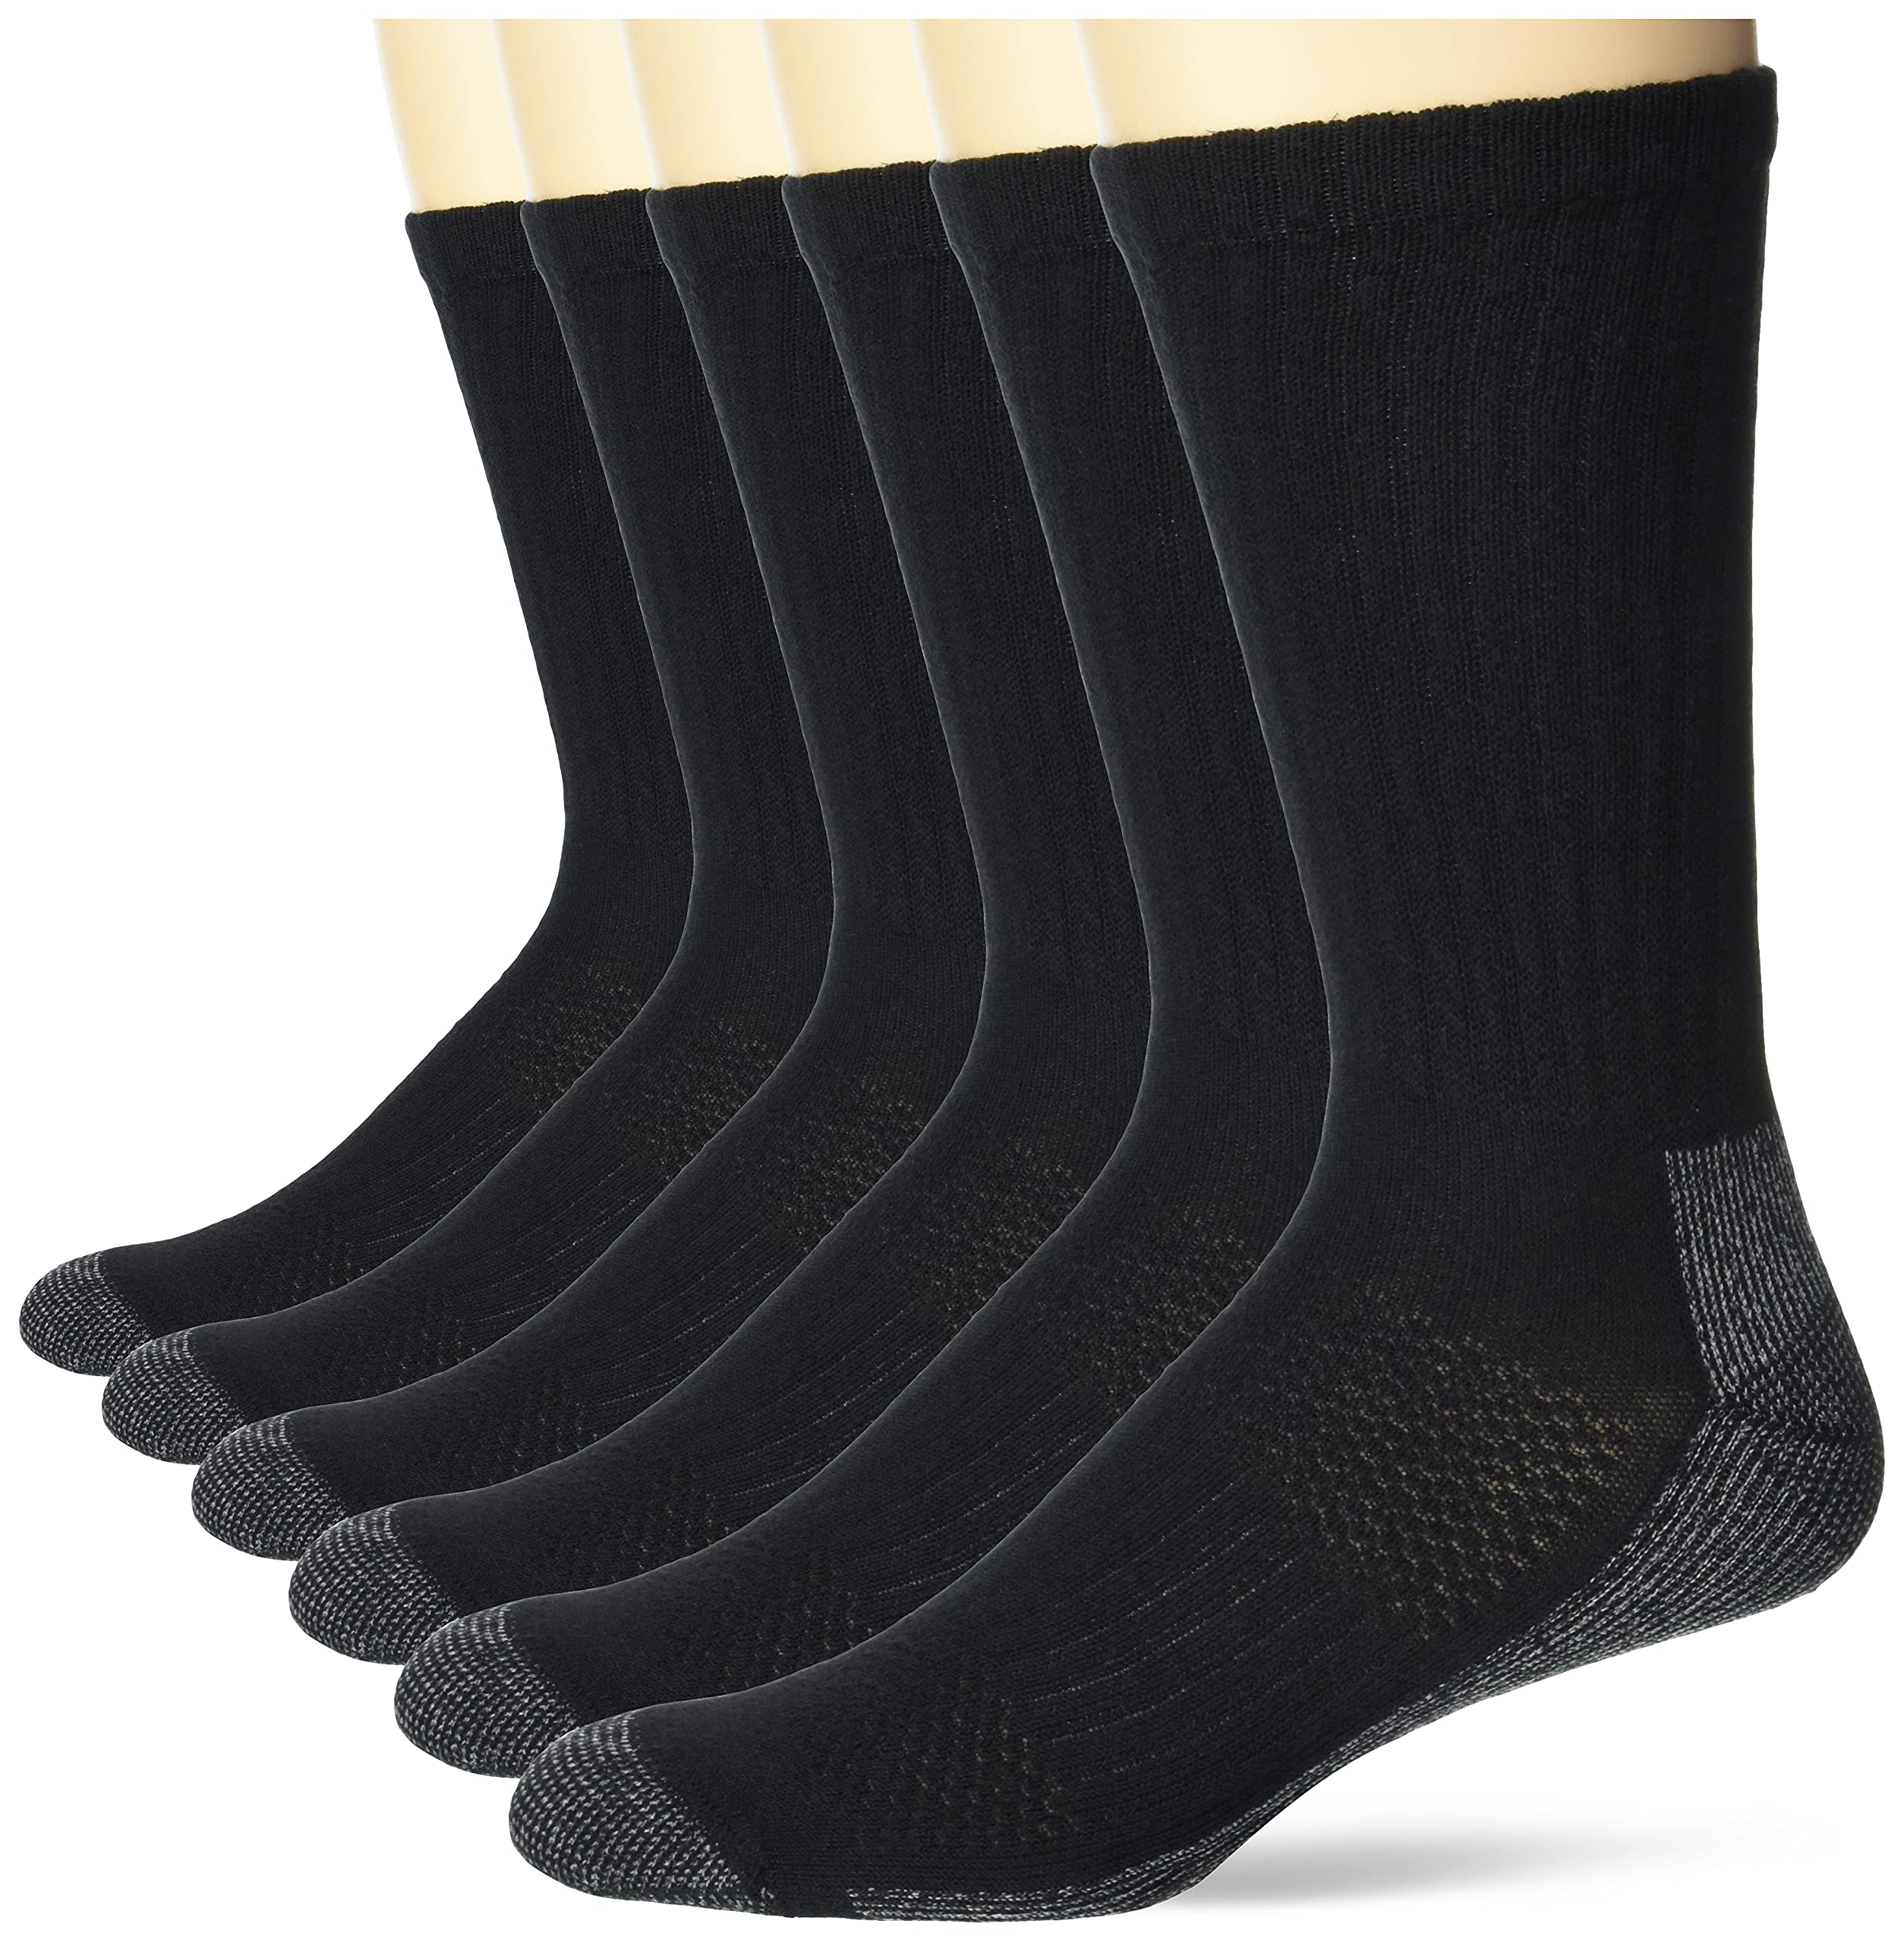 Hanes Men's Work Socks, 6-Pack